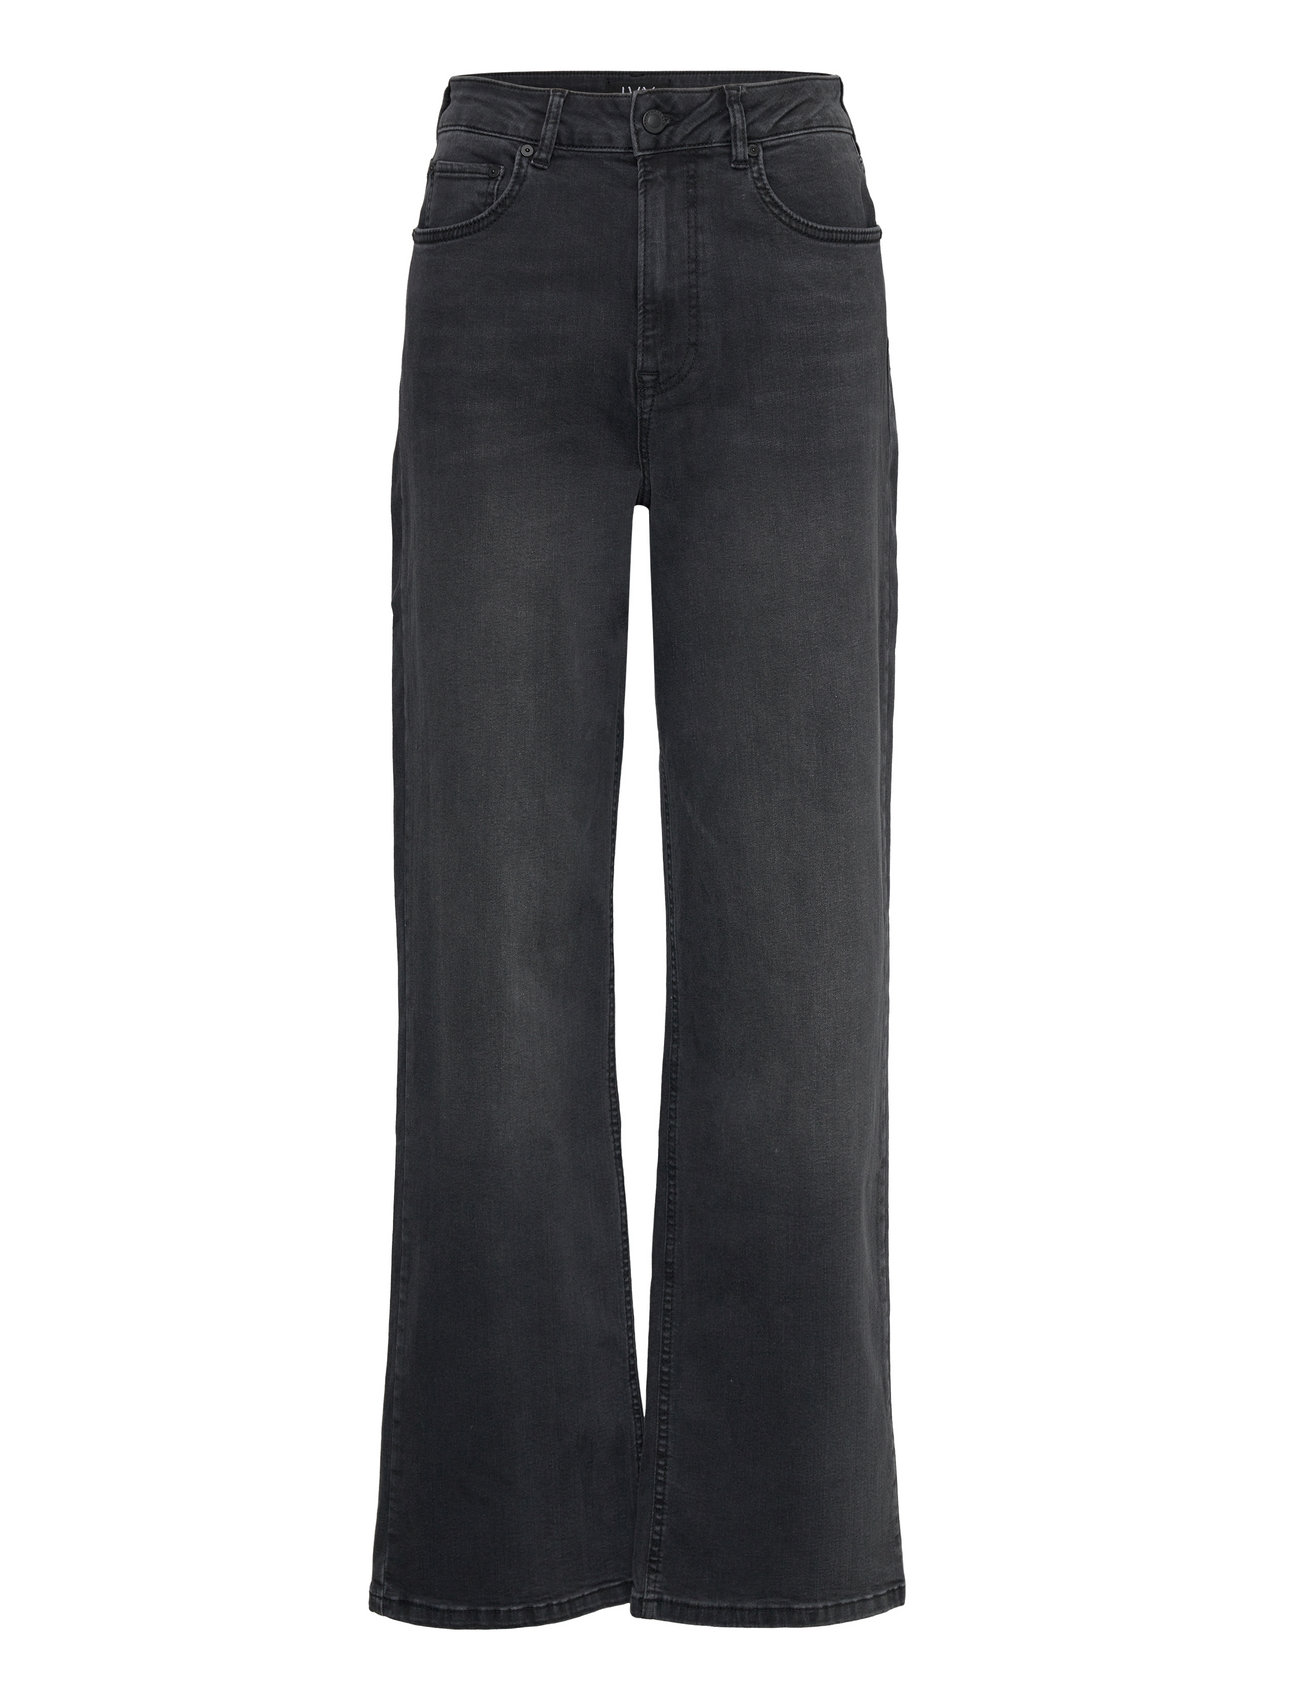 IVY Copenhagen Ivy-brooke Jeans Wash Bangkok Black - Brede jeans ...